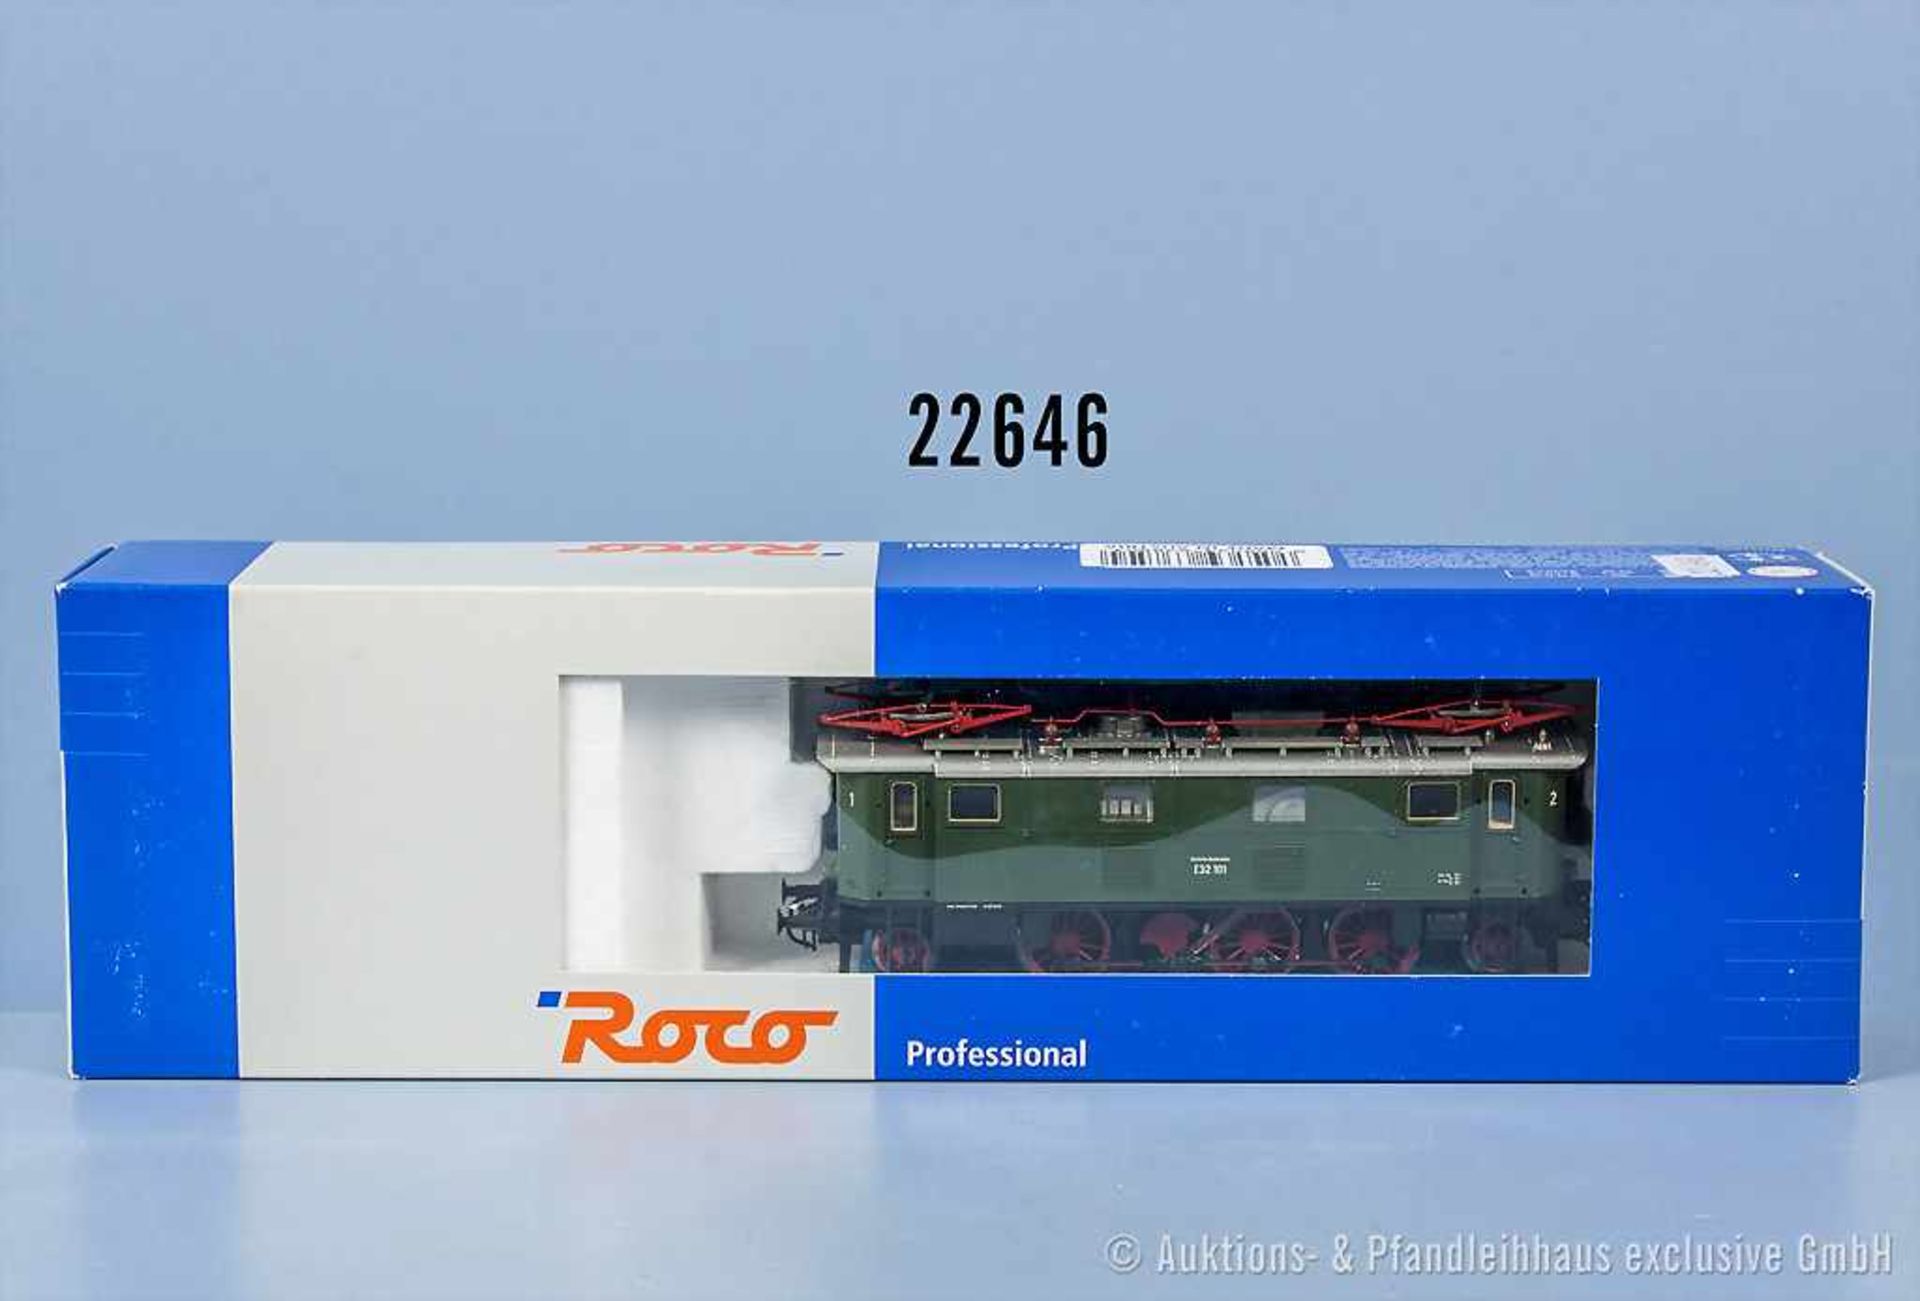 Roco Professional H0 63850 E-Lok der DB, BN E32 101, mit Digitalschnittstelle, Zustand 0-1, in OVP